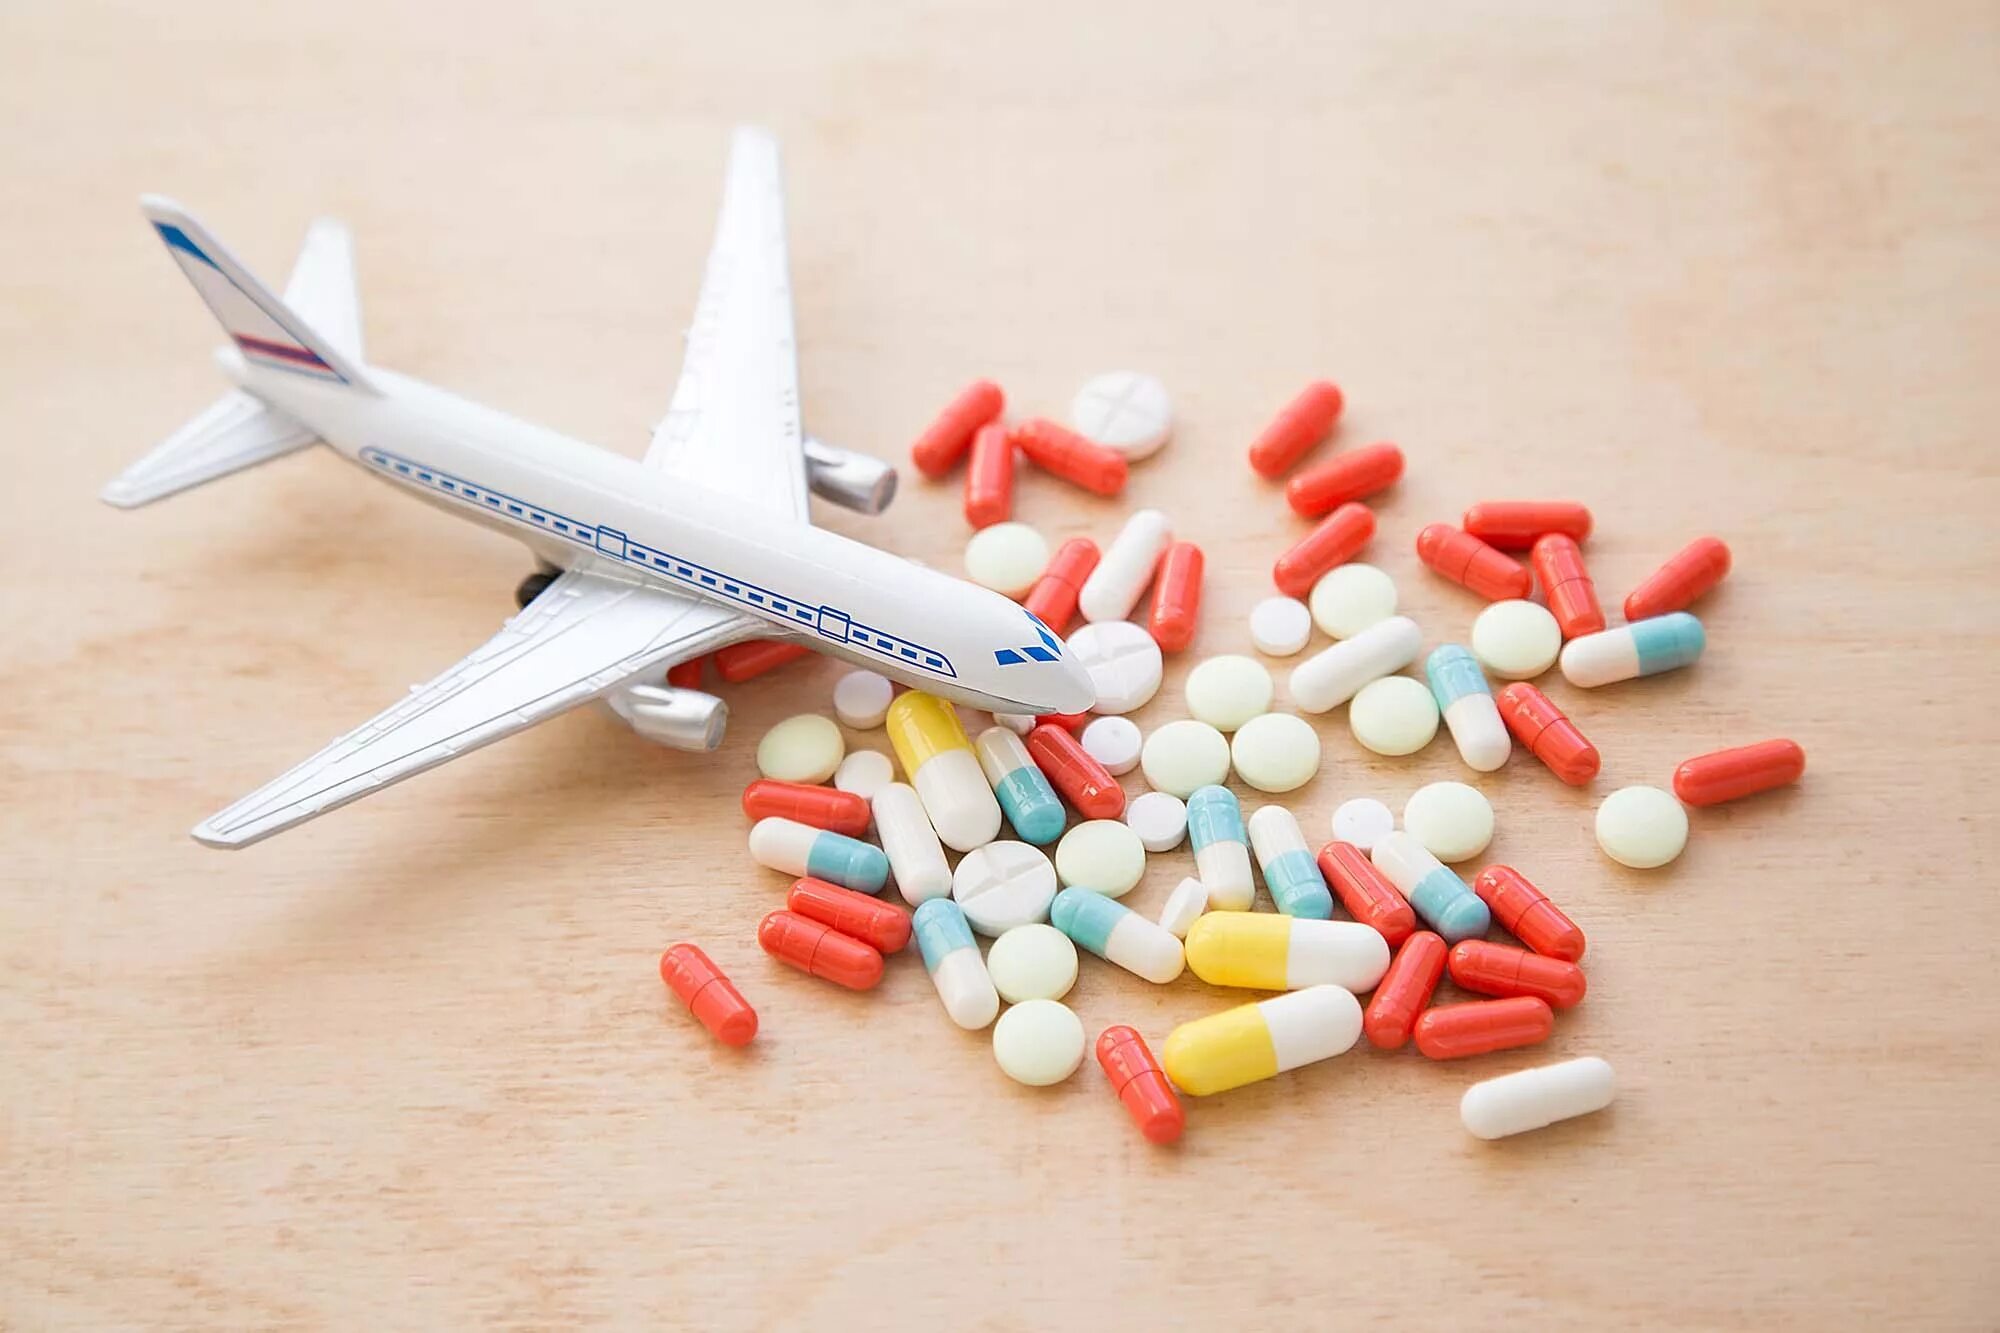 Можно ли игрушки в самолет. Лекарства в самолет. Таблетки для самолета. Самолет провоз лекарственных препаратов. Таблетки для полета на самолете.